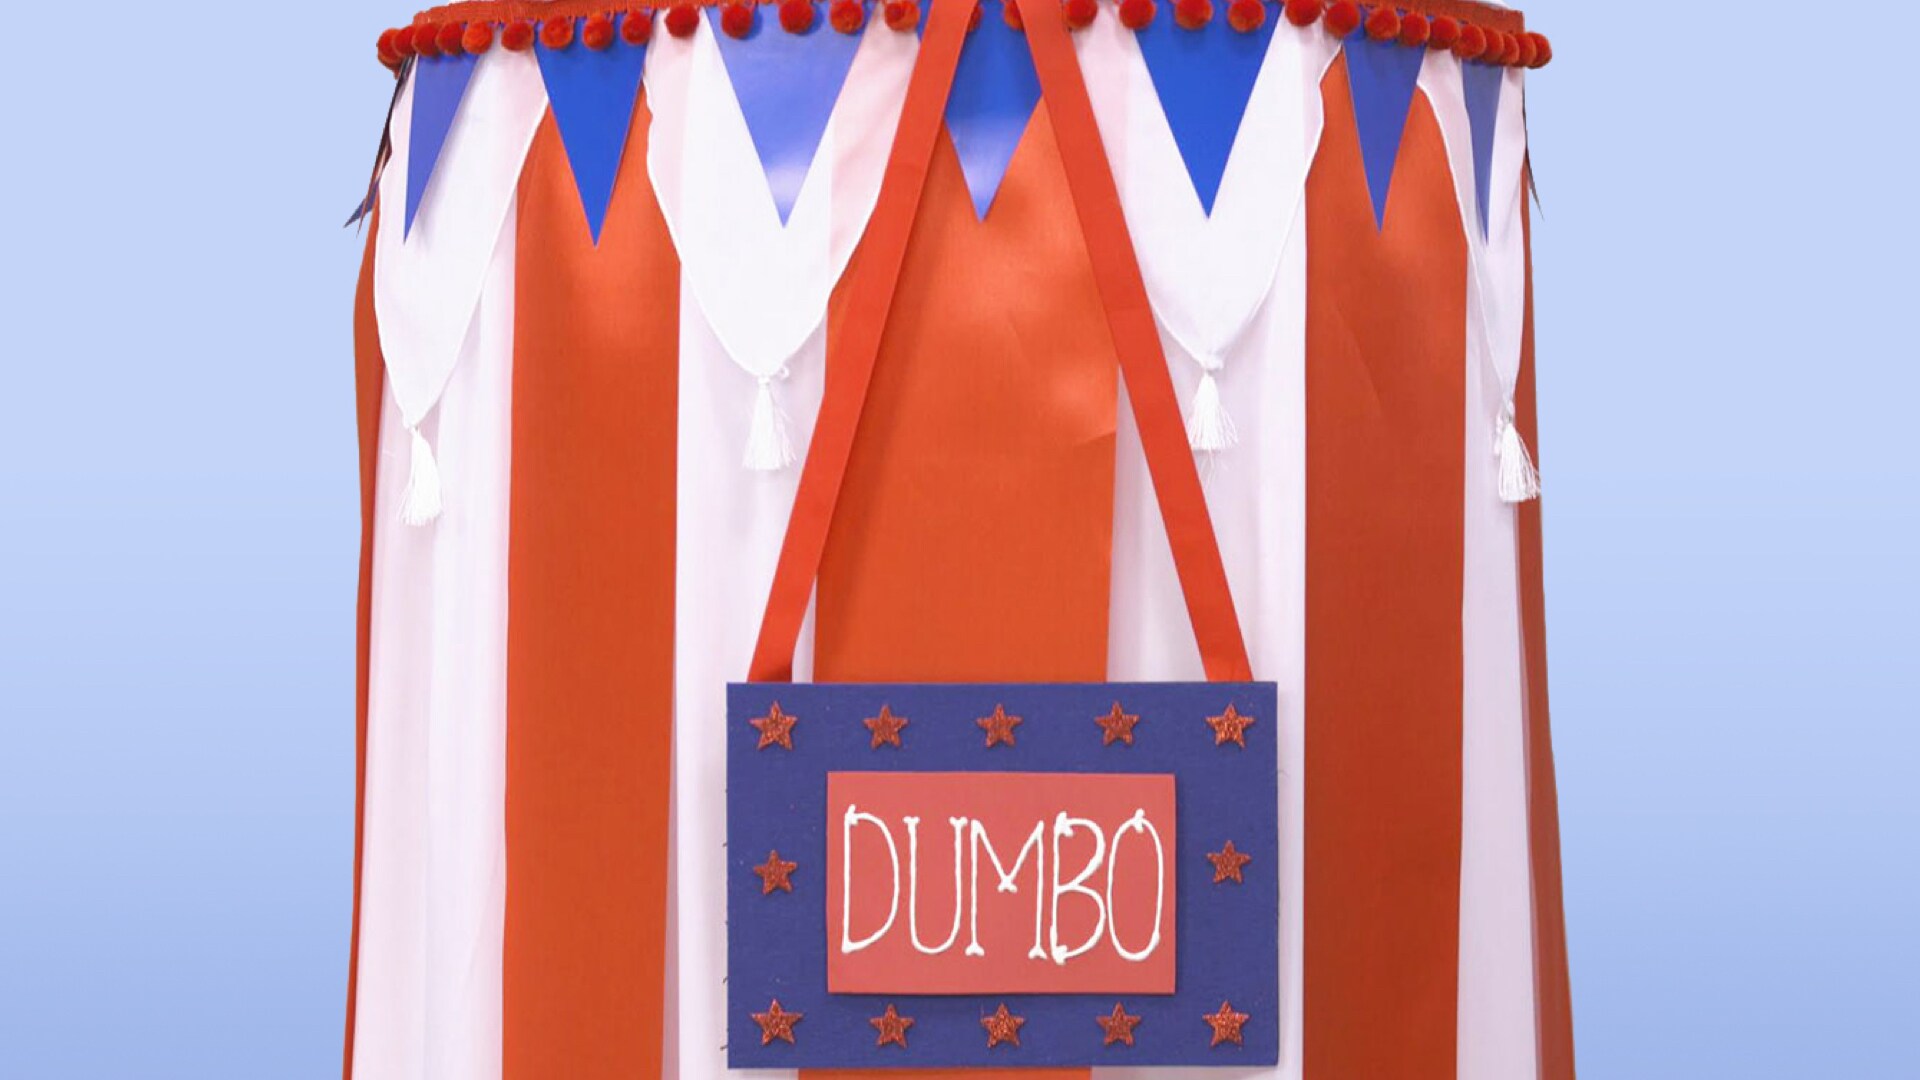 Dumbo's Circus Tent